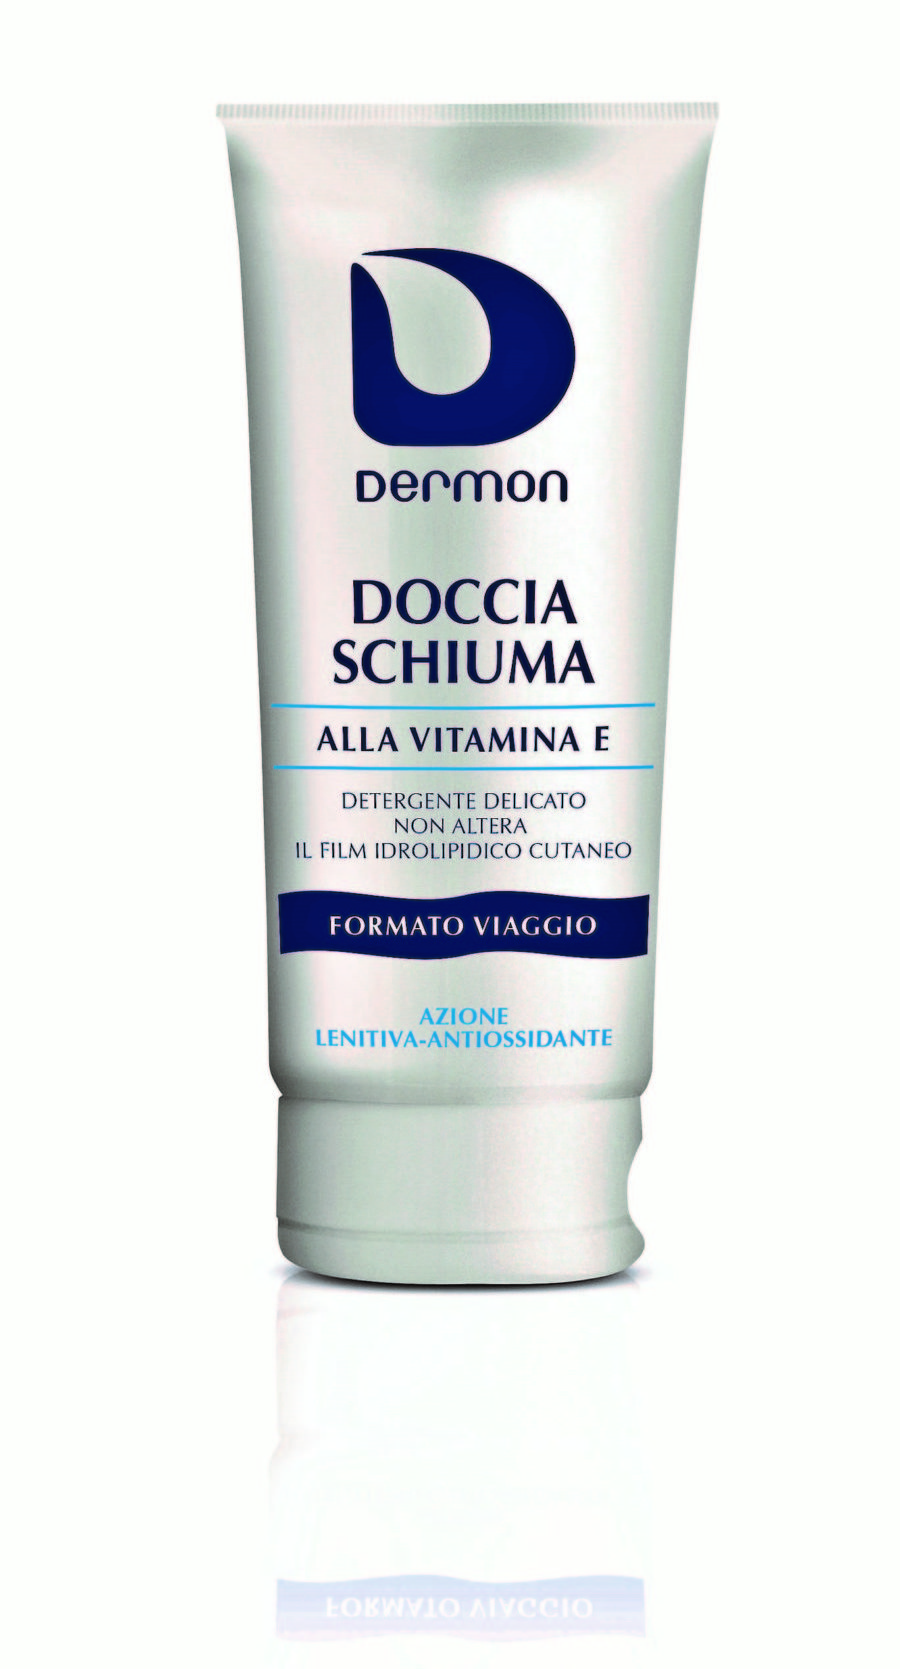 Doccia Schiuma Dermon